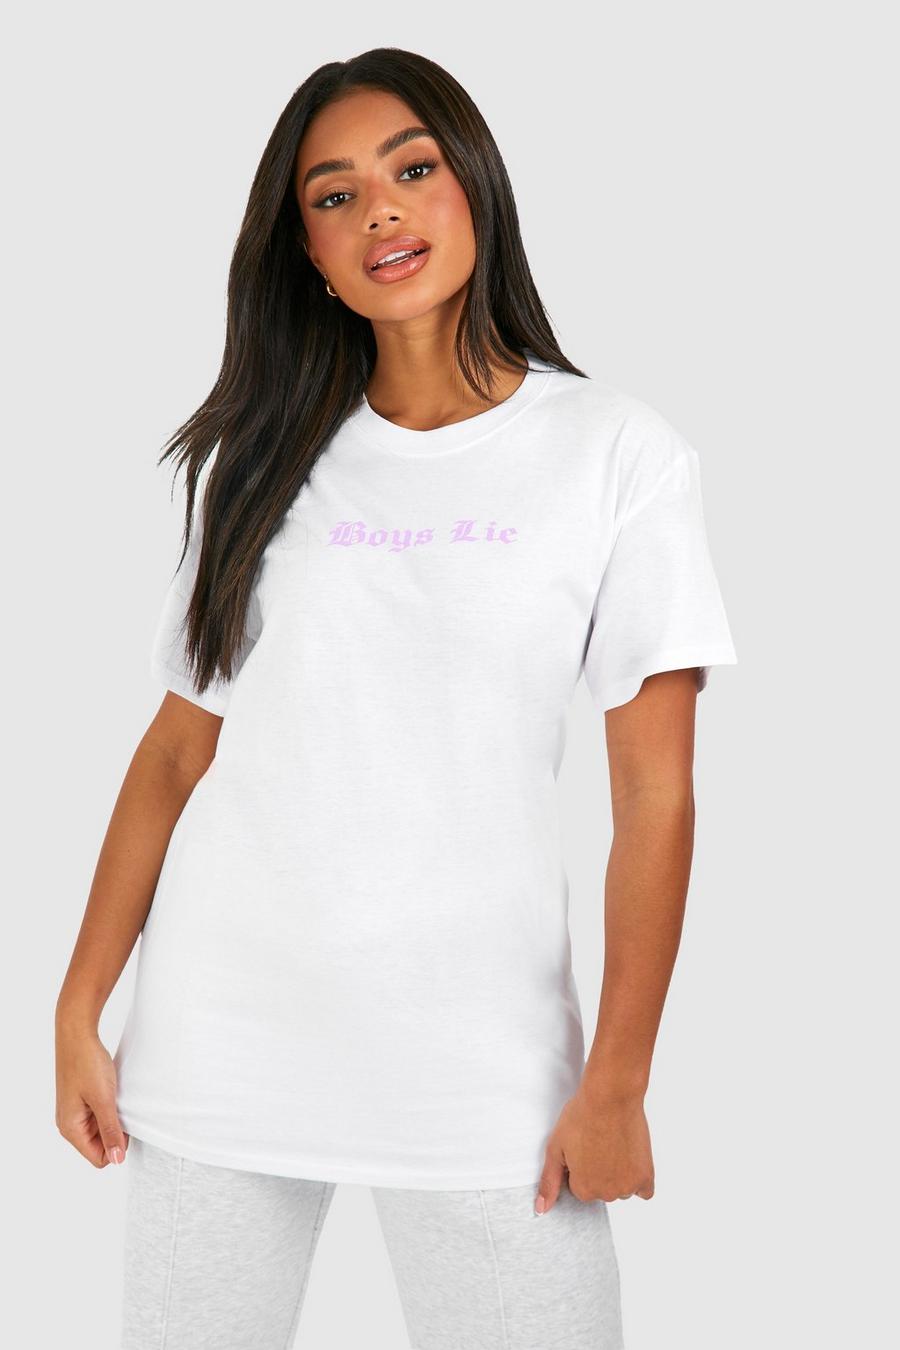 T-shirt oversize en coton à slogan Boys Lie, White